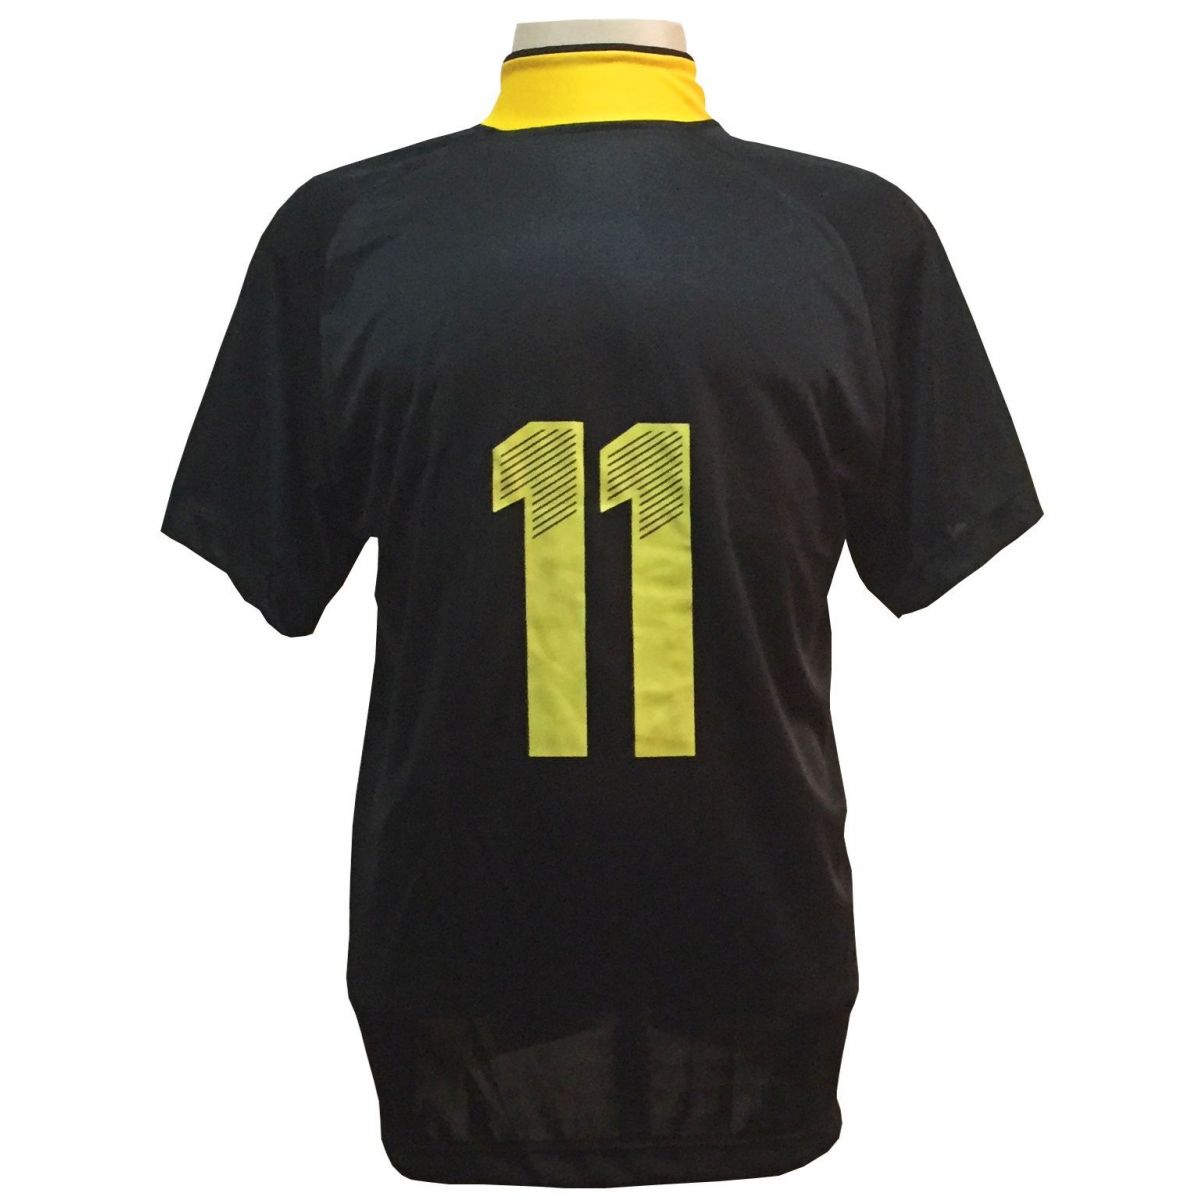 Fardamento Completo modelo Milan 12+1 (12 Camisas Preto/Amarelo + 12 Calções Preto/Amarelo + 12 Pares de Meiões Pretos + 1 Conjunto de Goleiro) + Brindes